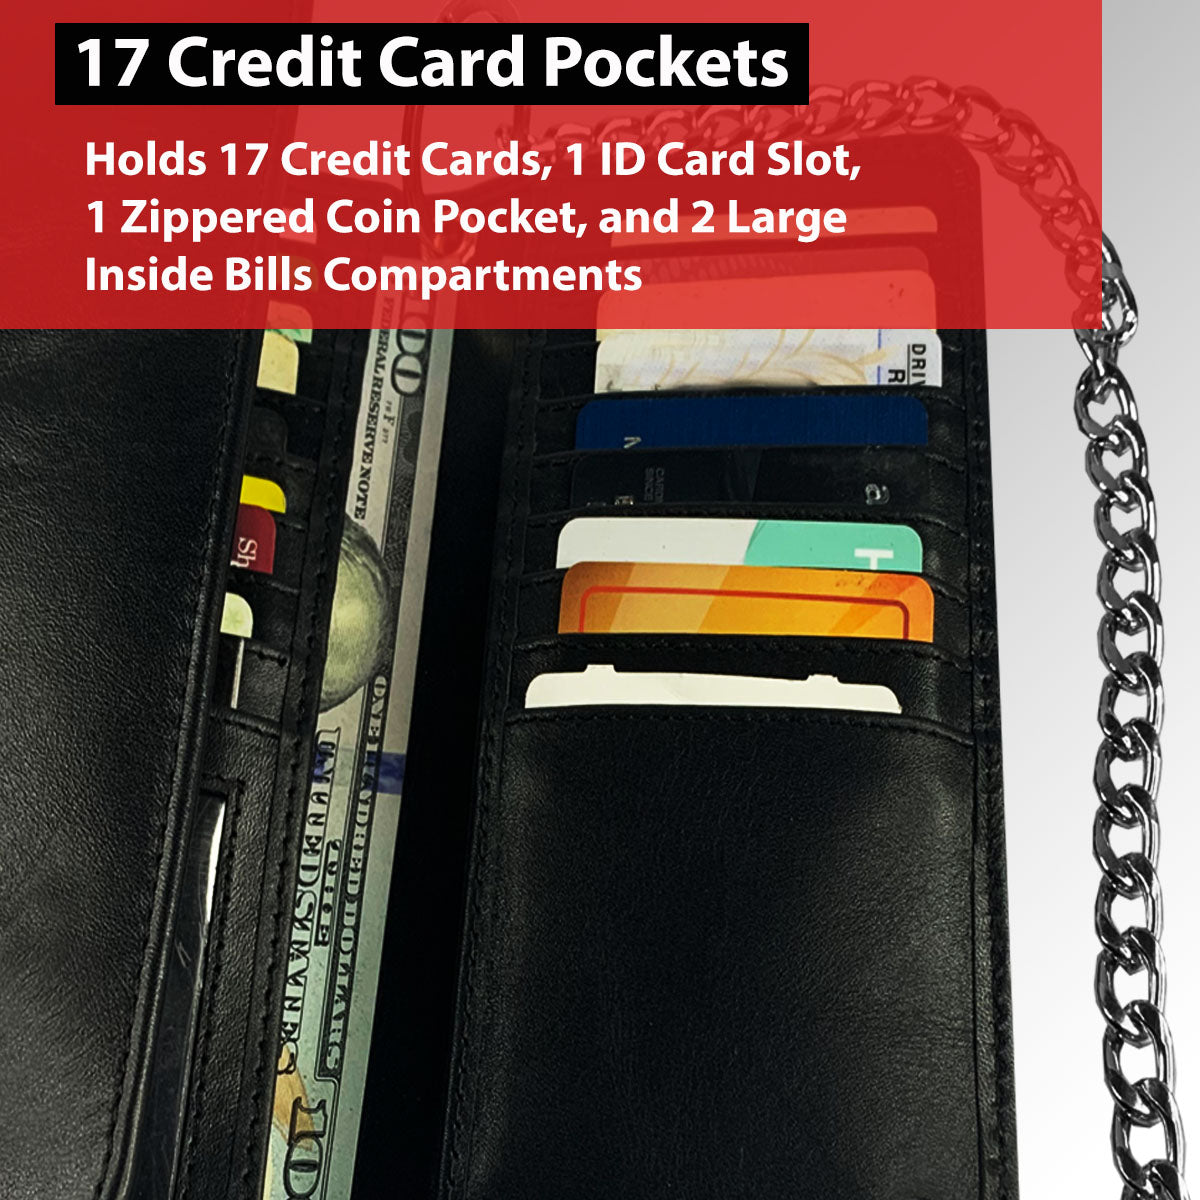 23 3-Layer Wallet Chain – Hair Glove